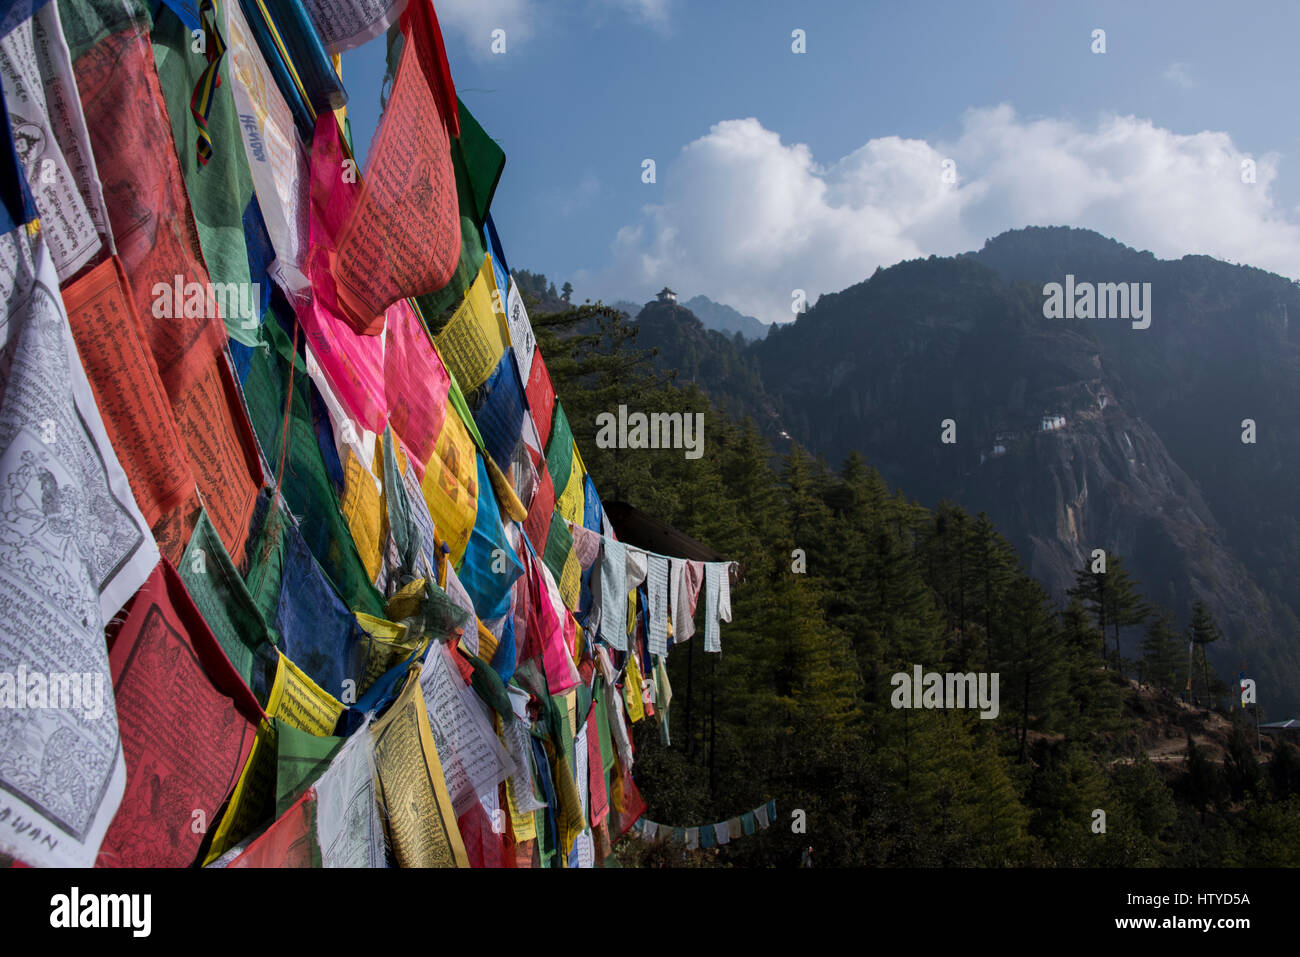 Il Bhutan, Paro. Preghiera colorate flange nella parte anteriore del piccolo annesso di Tiger's Nest, sacra buddista himalayana tempio complesso. Foto Stock